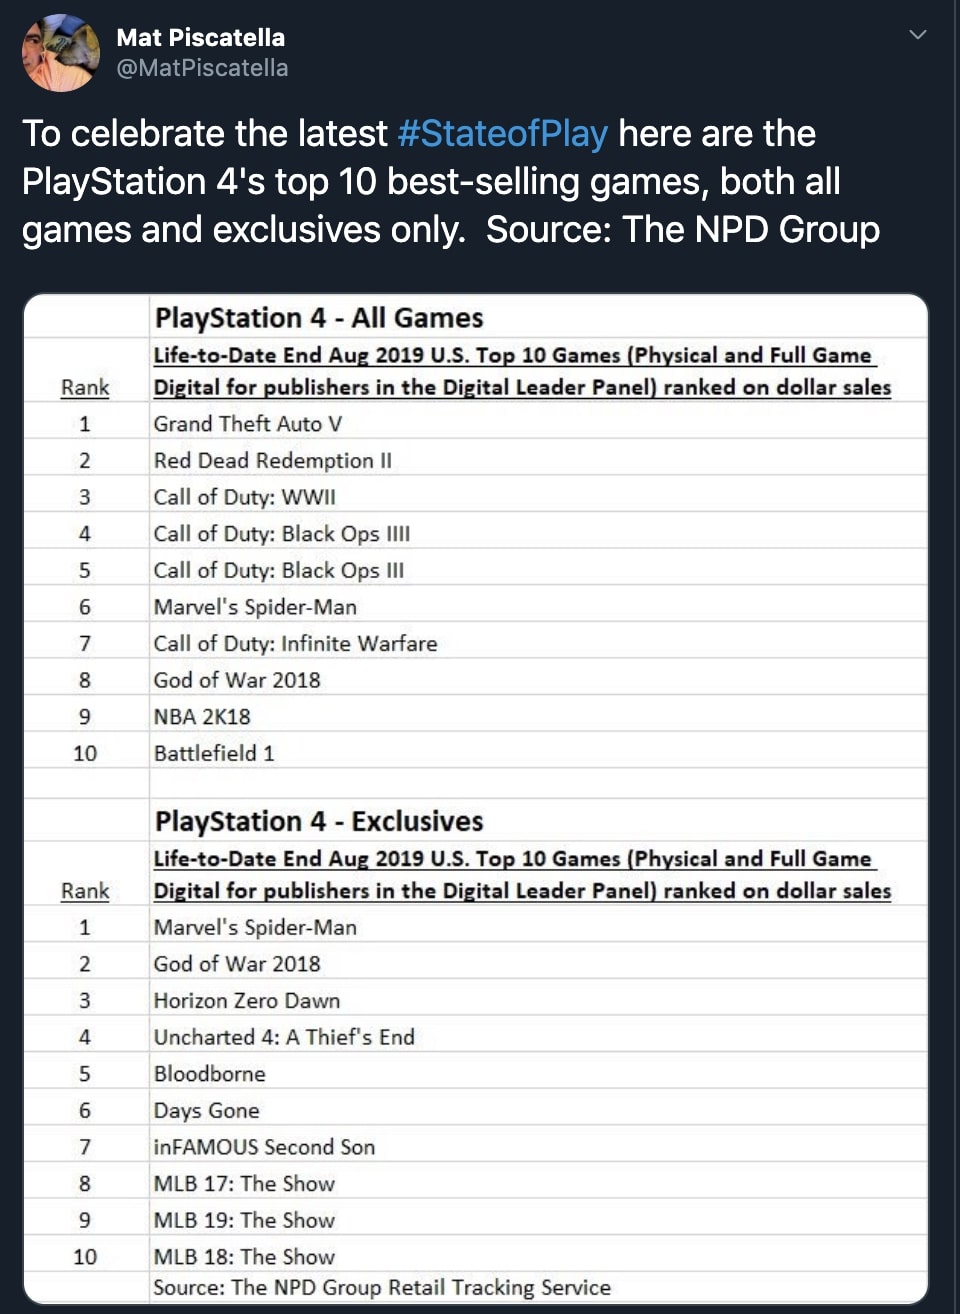 Os 10 jogos mais vendidos do PlayStation 1